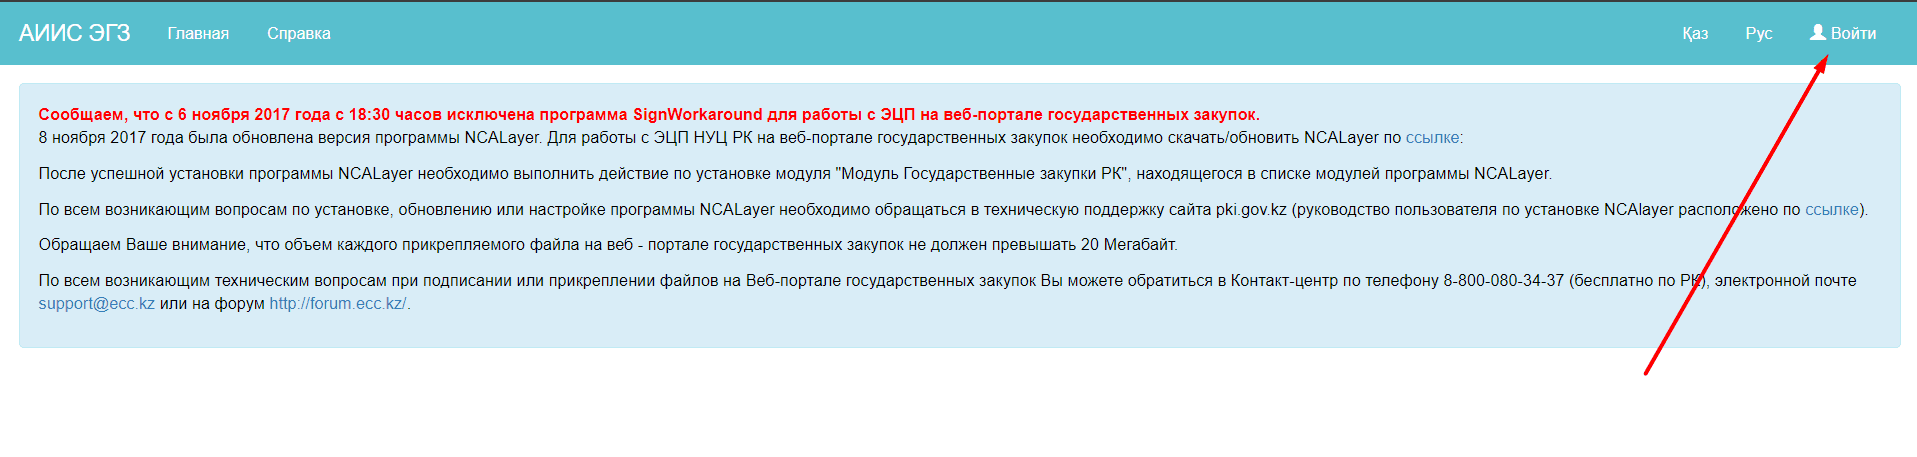 Портал проведения государственных закупок Республики Казахстан (v3bl.goszakup.gov.kz)